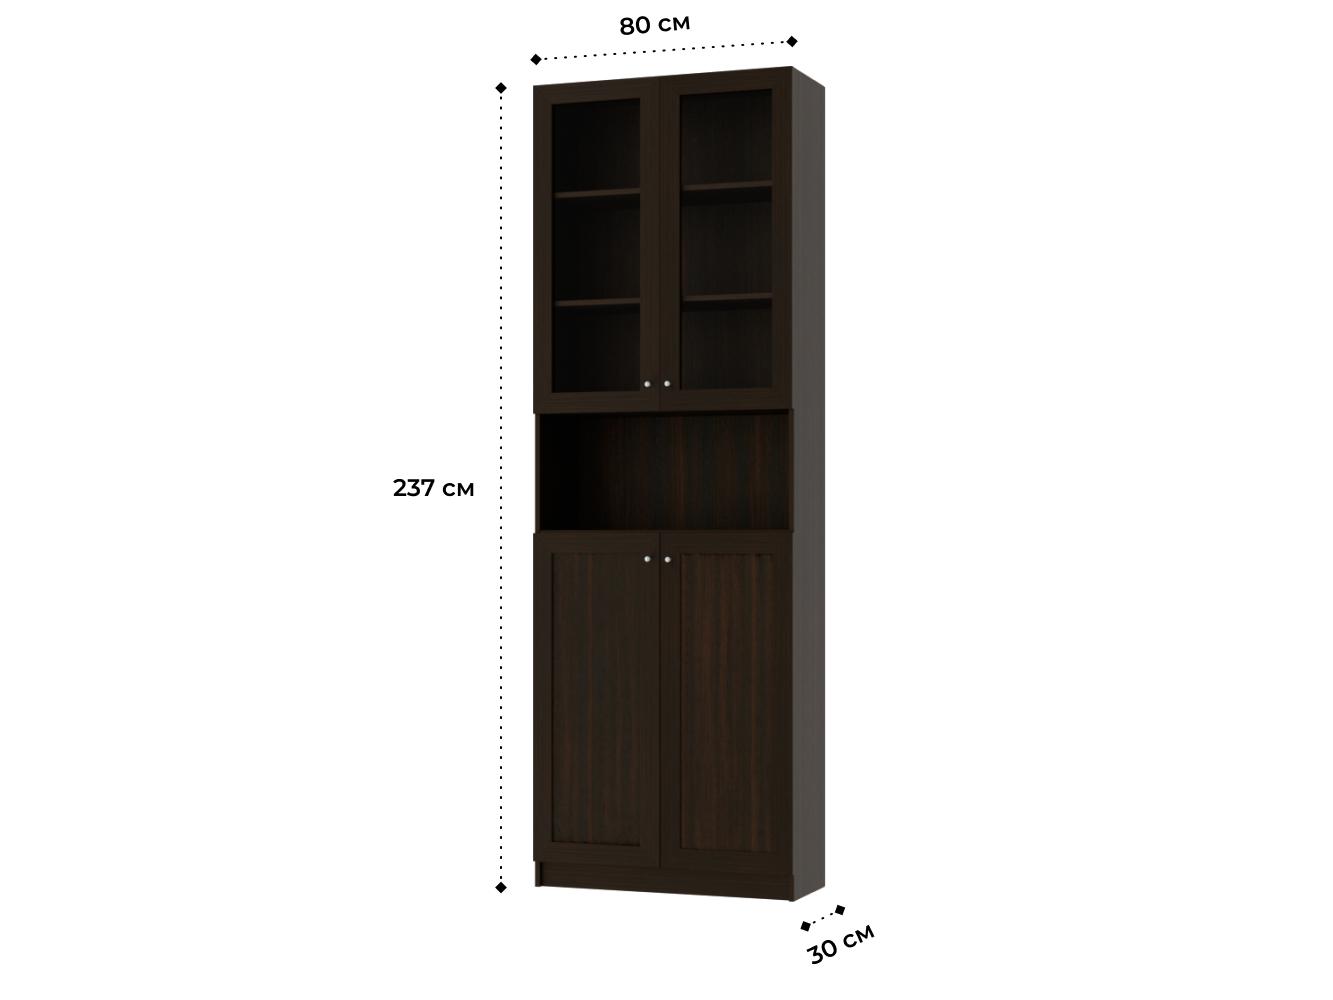 Книжный шкаф Билли 333 brown ИКЕА (IKEA) изображение товара